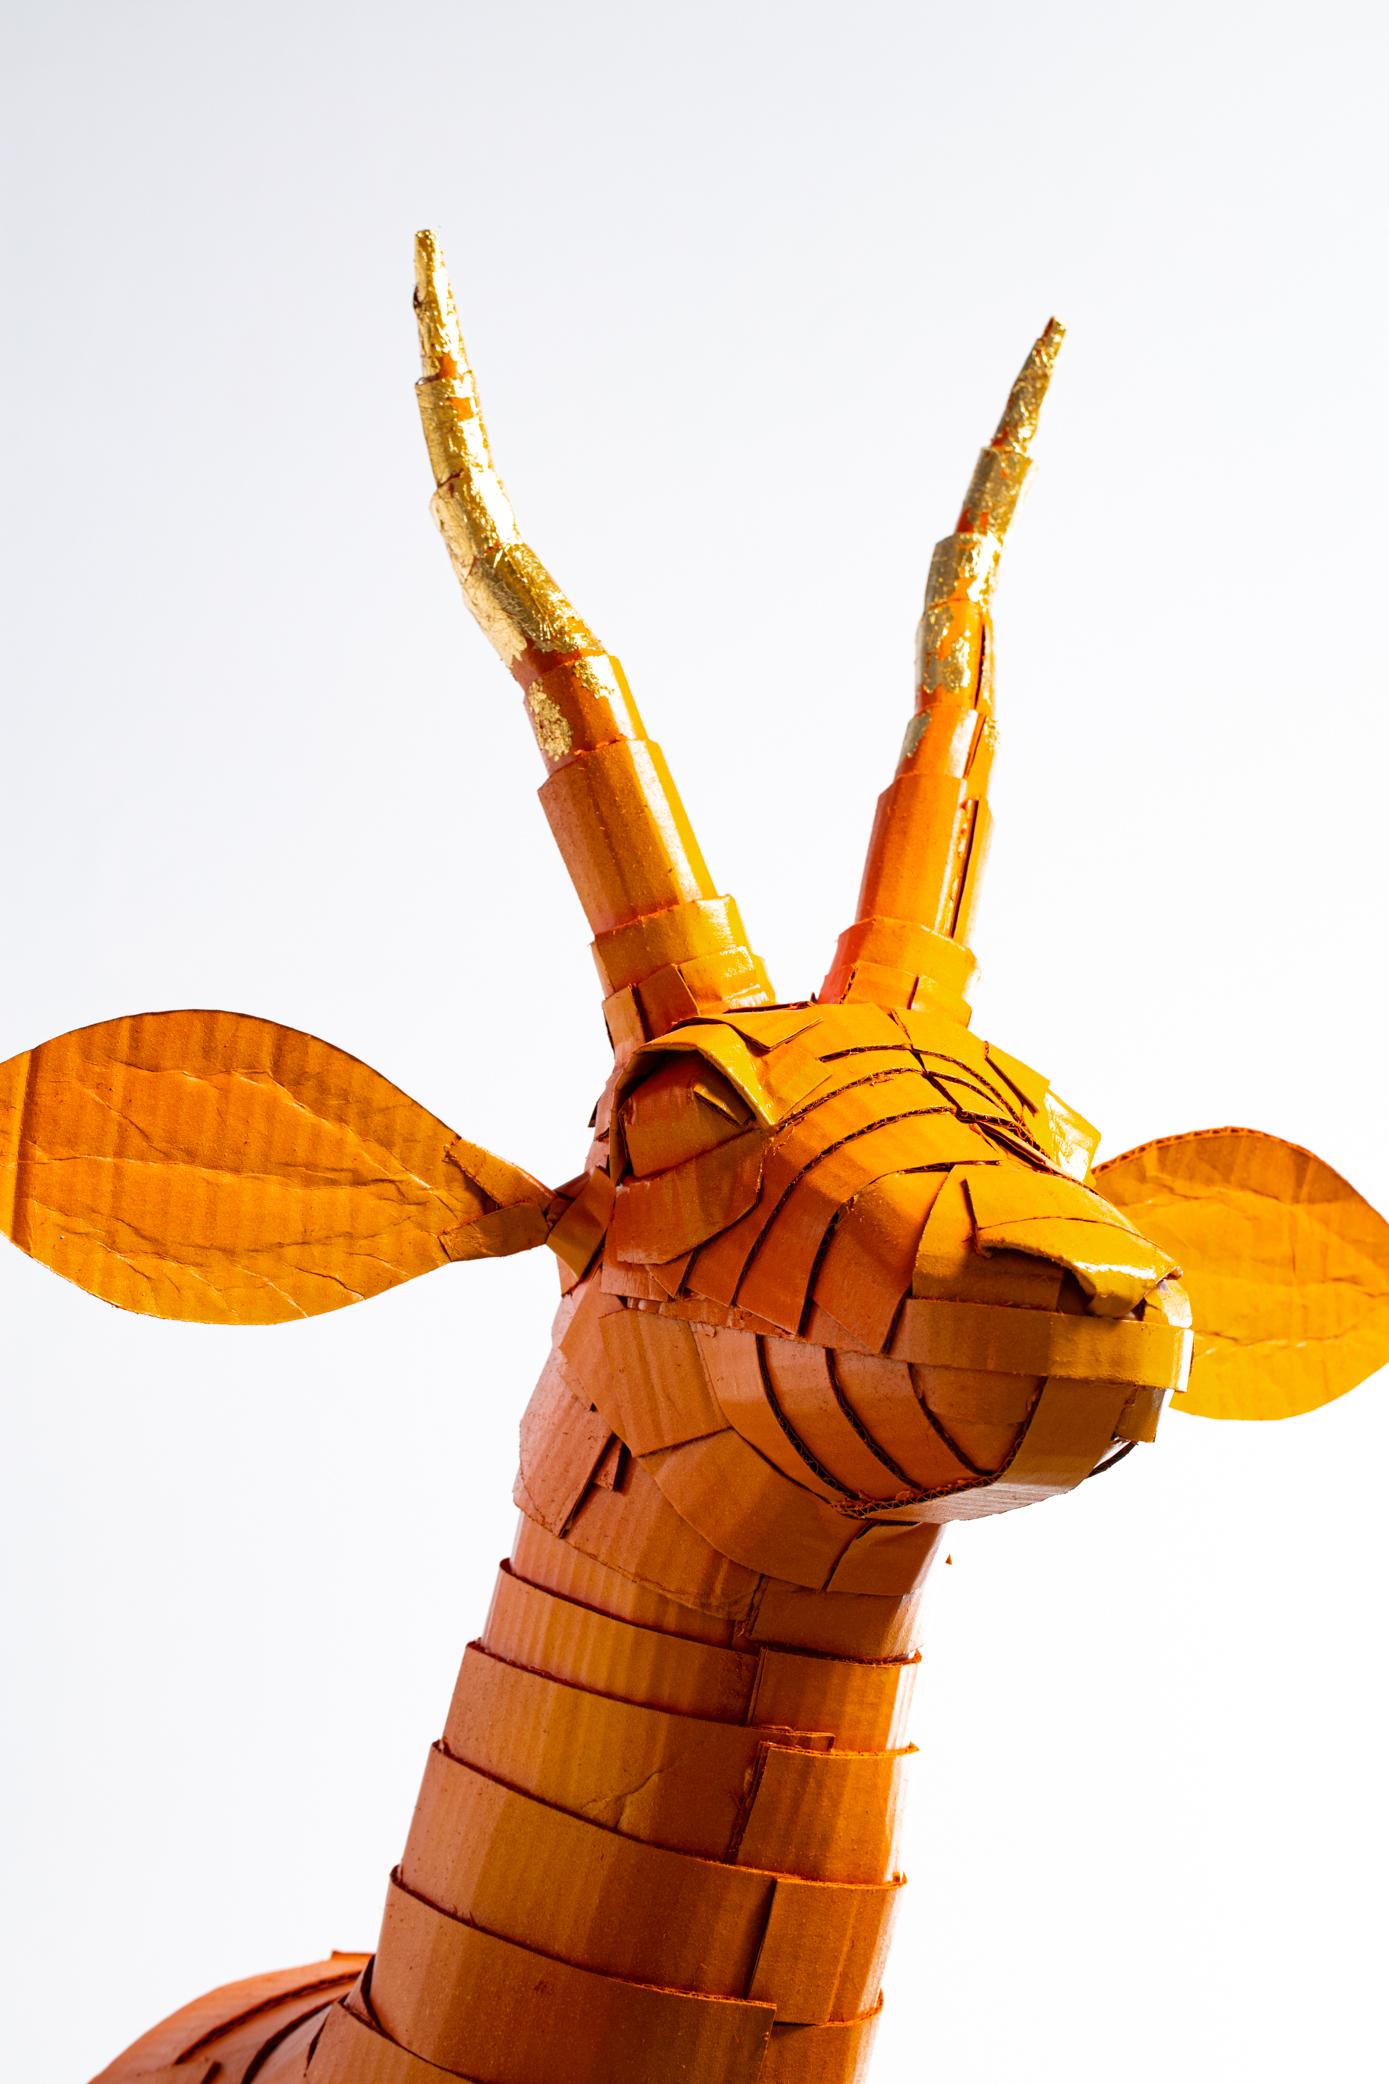 Sculpture de gazelle en orange kaki avec détail de corne en feuille d'or, méticuleusement créée par l'artiste Justin King à partir de morceaux de carton et de papier mâché découpés et pliés individuellement. Le choix des couleurs et les détails